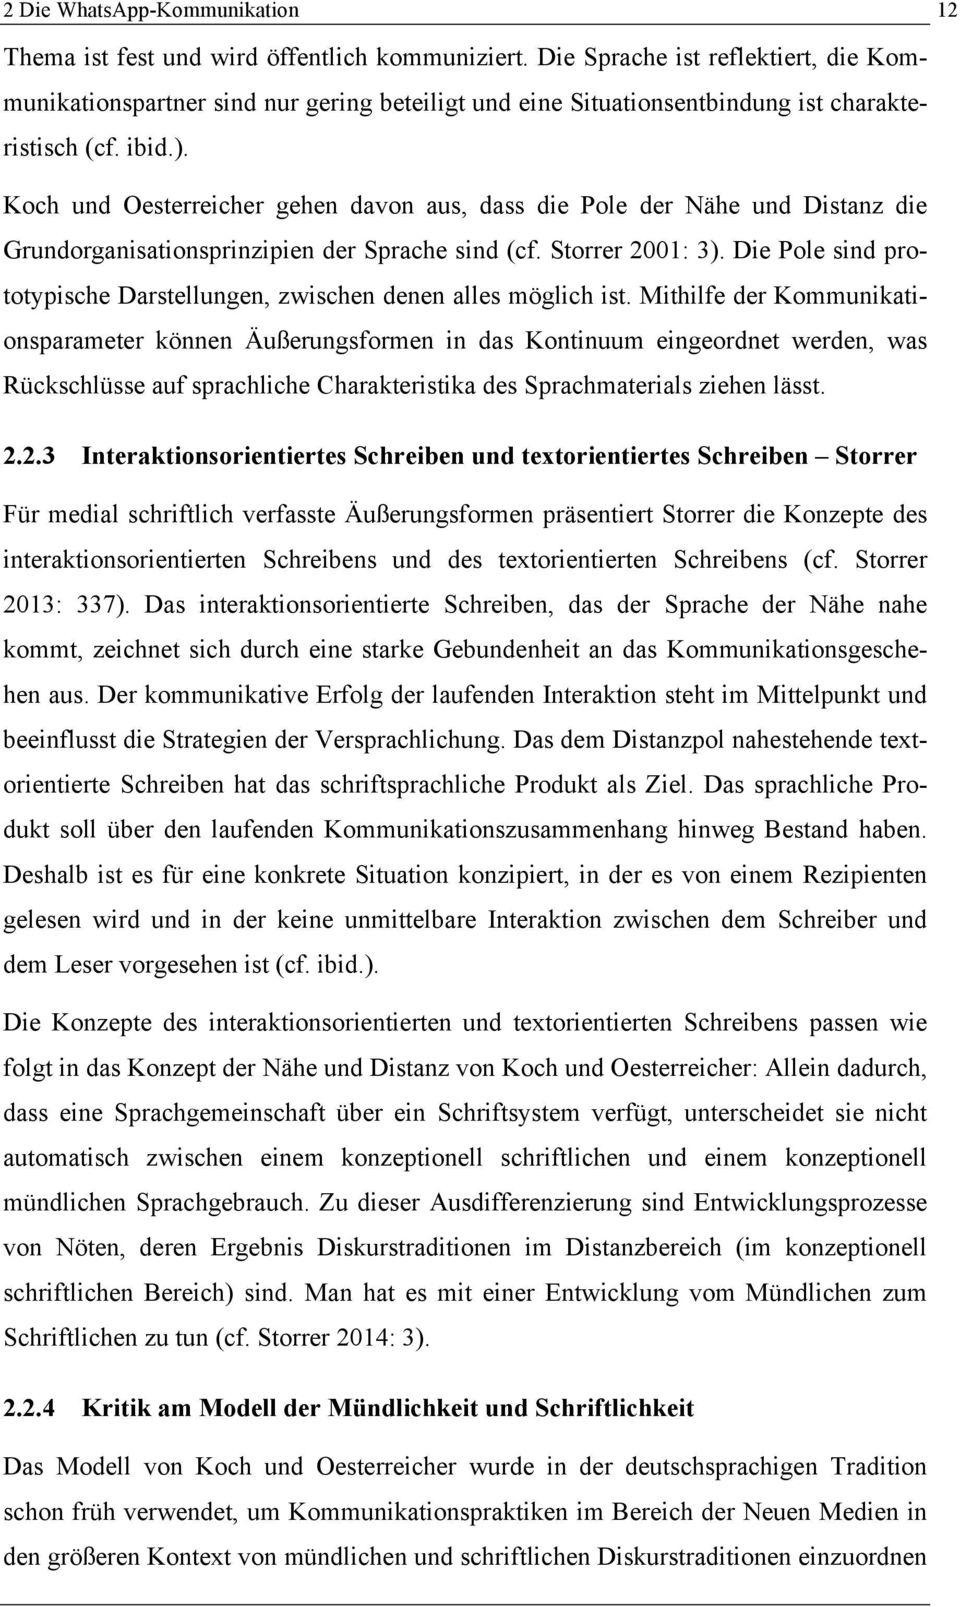 Koch und Oesterreicher gehen davon aus, dass die Pole der Nähe und Distanz die Grundorganisationsprinzipien der Sprache sind (cf. Storrer 2001: 3).